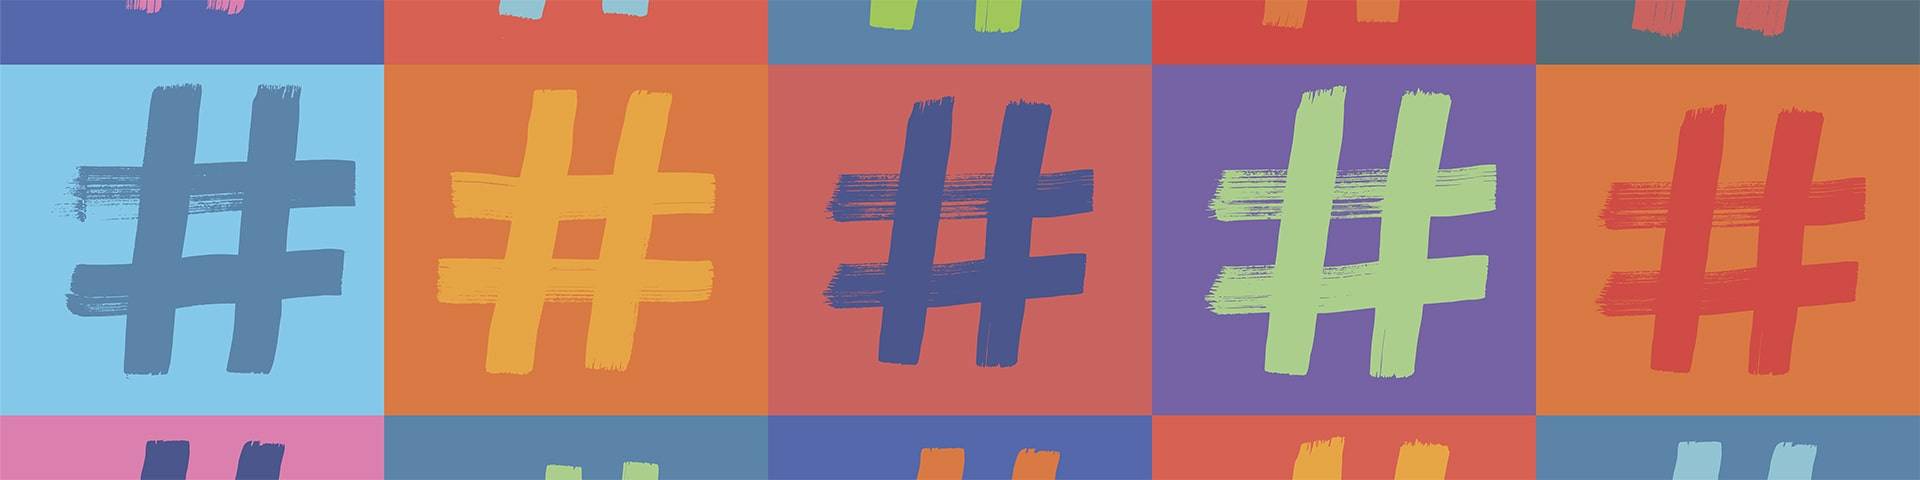 Iemand taggen op Instagram: Een beginnersgids voor meer engagement